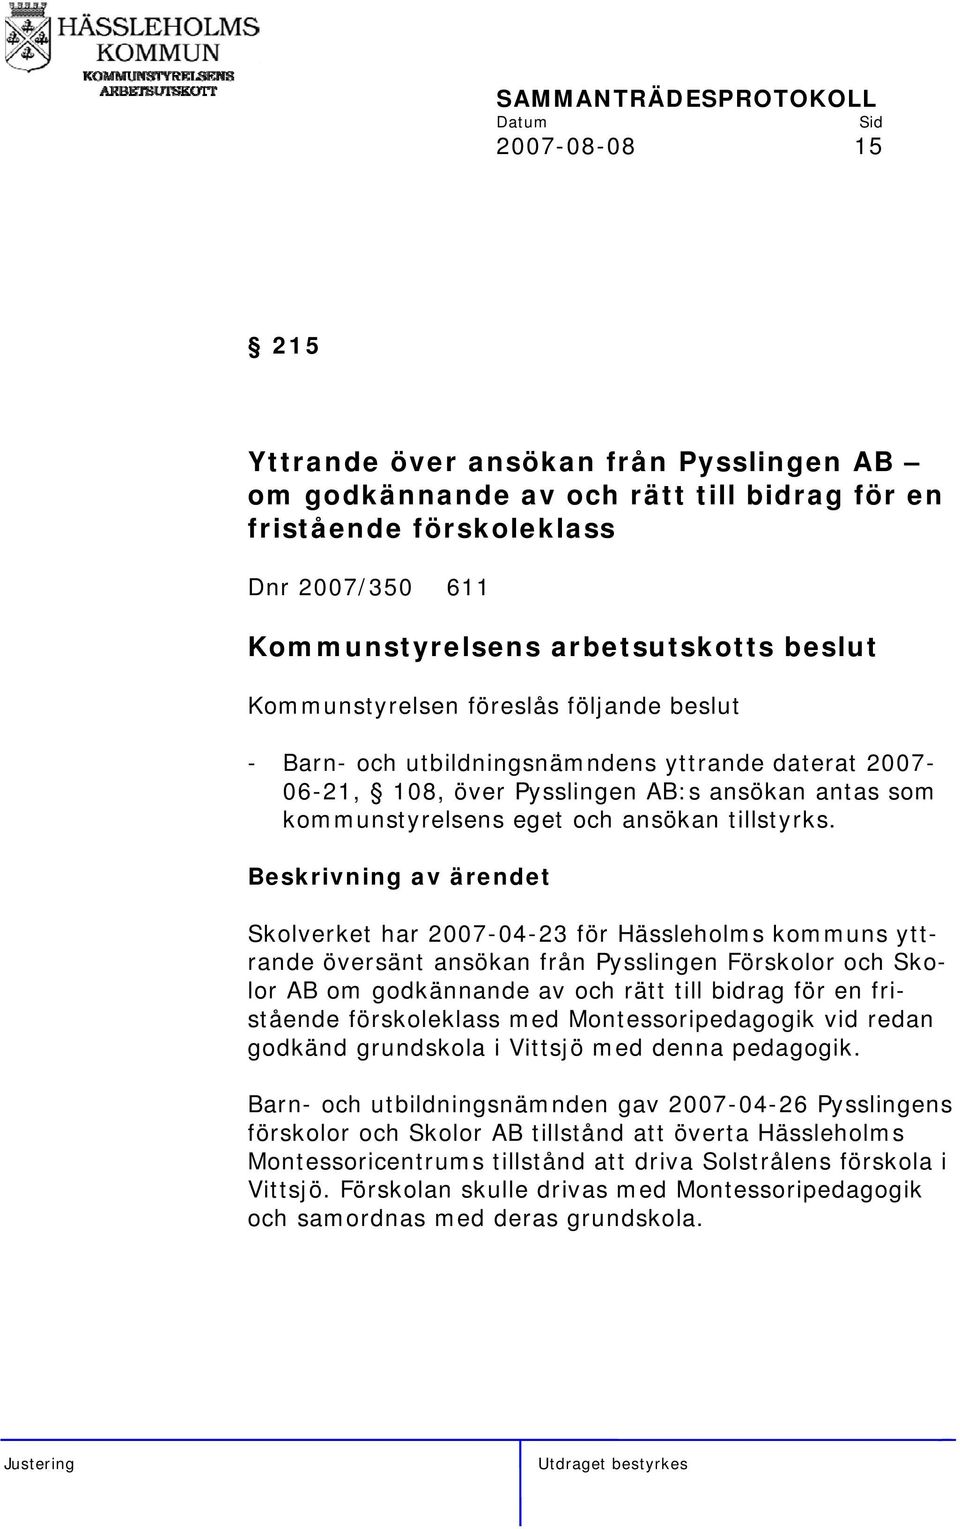 Skolverket har 2007-04-23 för Hässleholms kommuns yttrande översänt ansökan från Pysslingen Förskolor och Skolor AB om godkännande av och rätt till bidrag för en fristående förskoleklass med